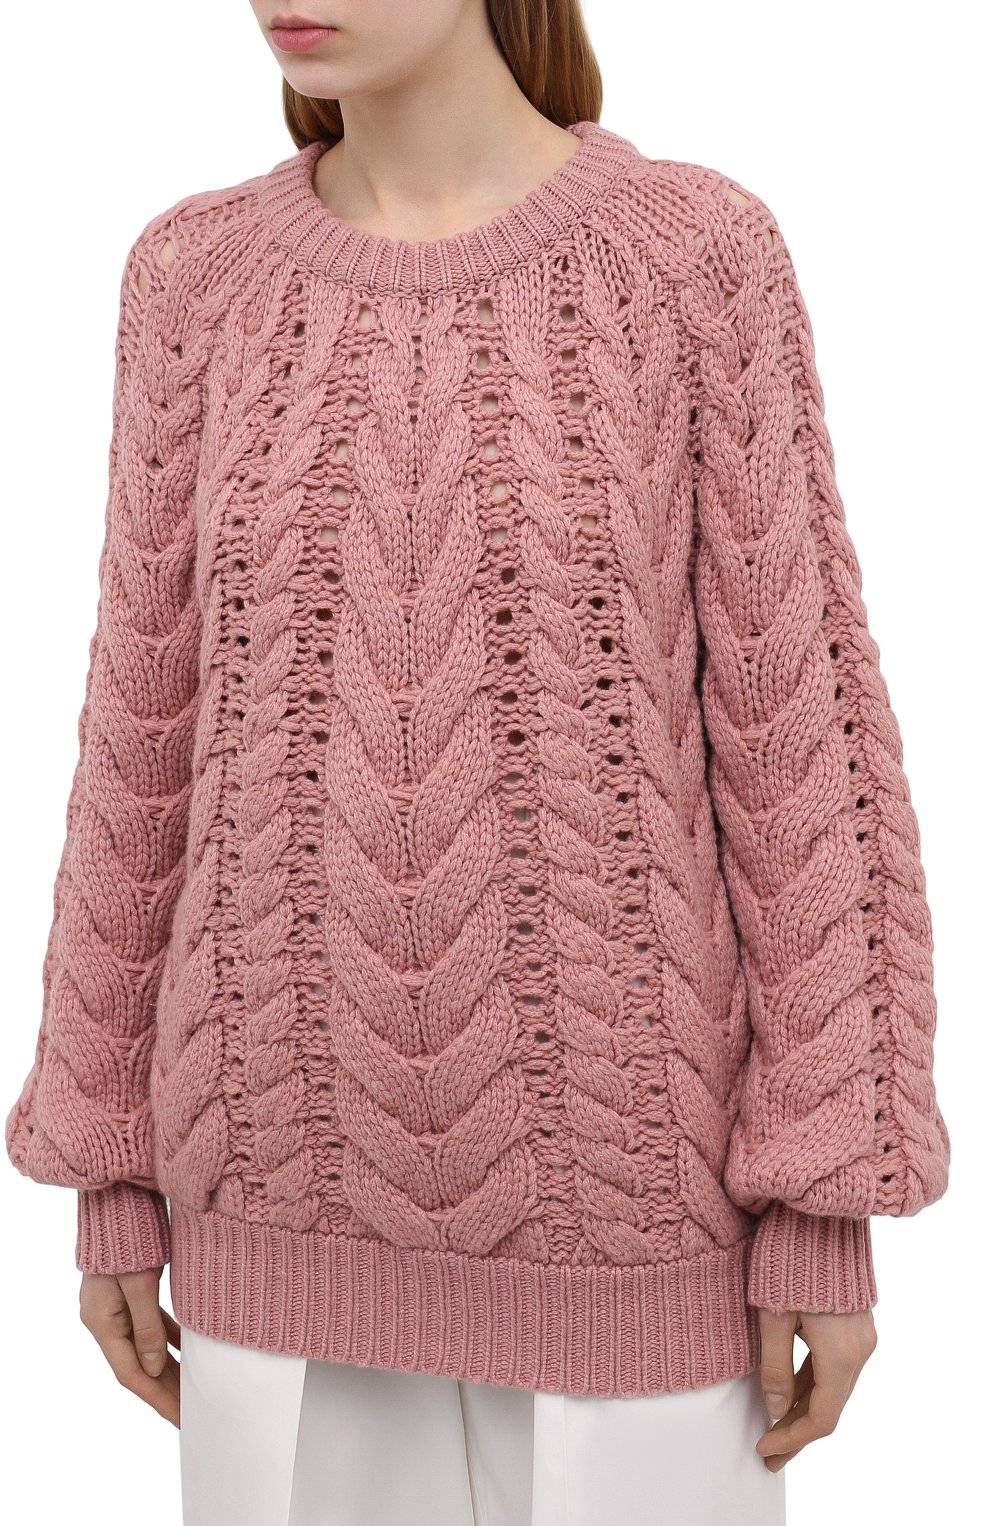 Женский розовый кашемировый свитер BRUNELLO CUCINELLI — купить в